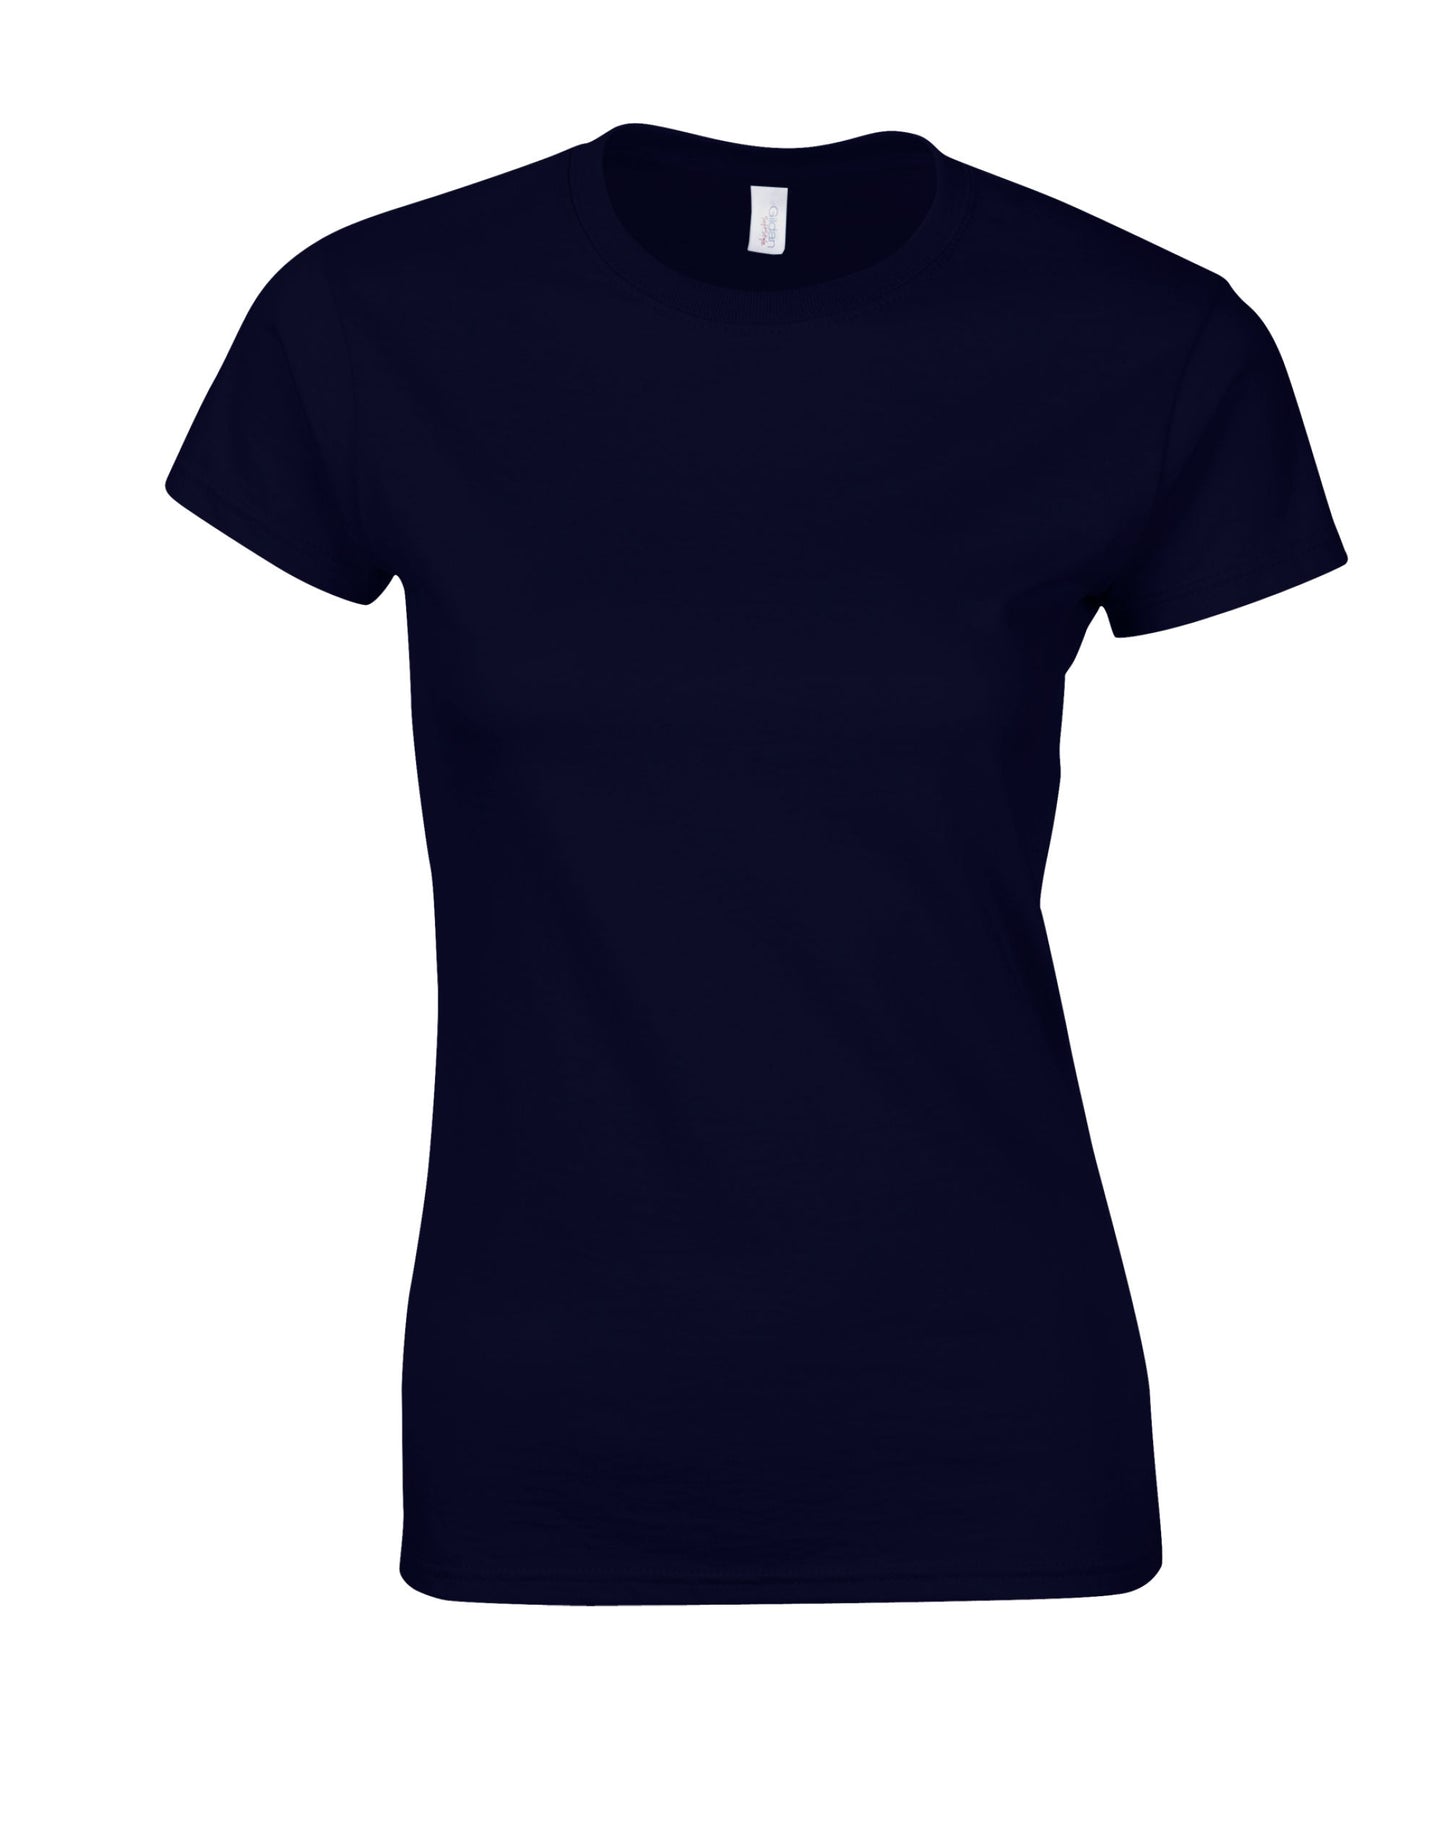 Gildan Softstyle Midweight Damen-T-Shirt 